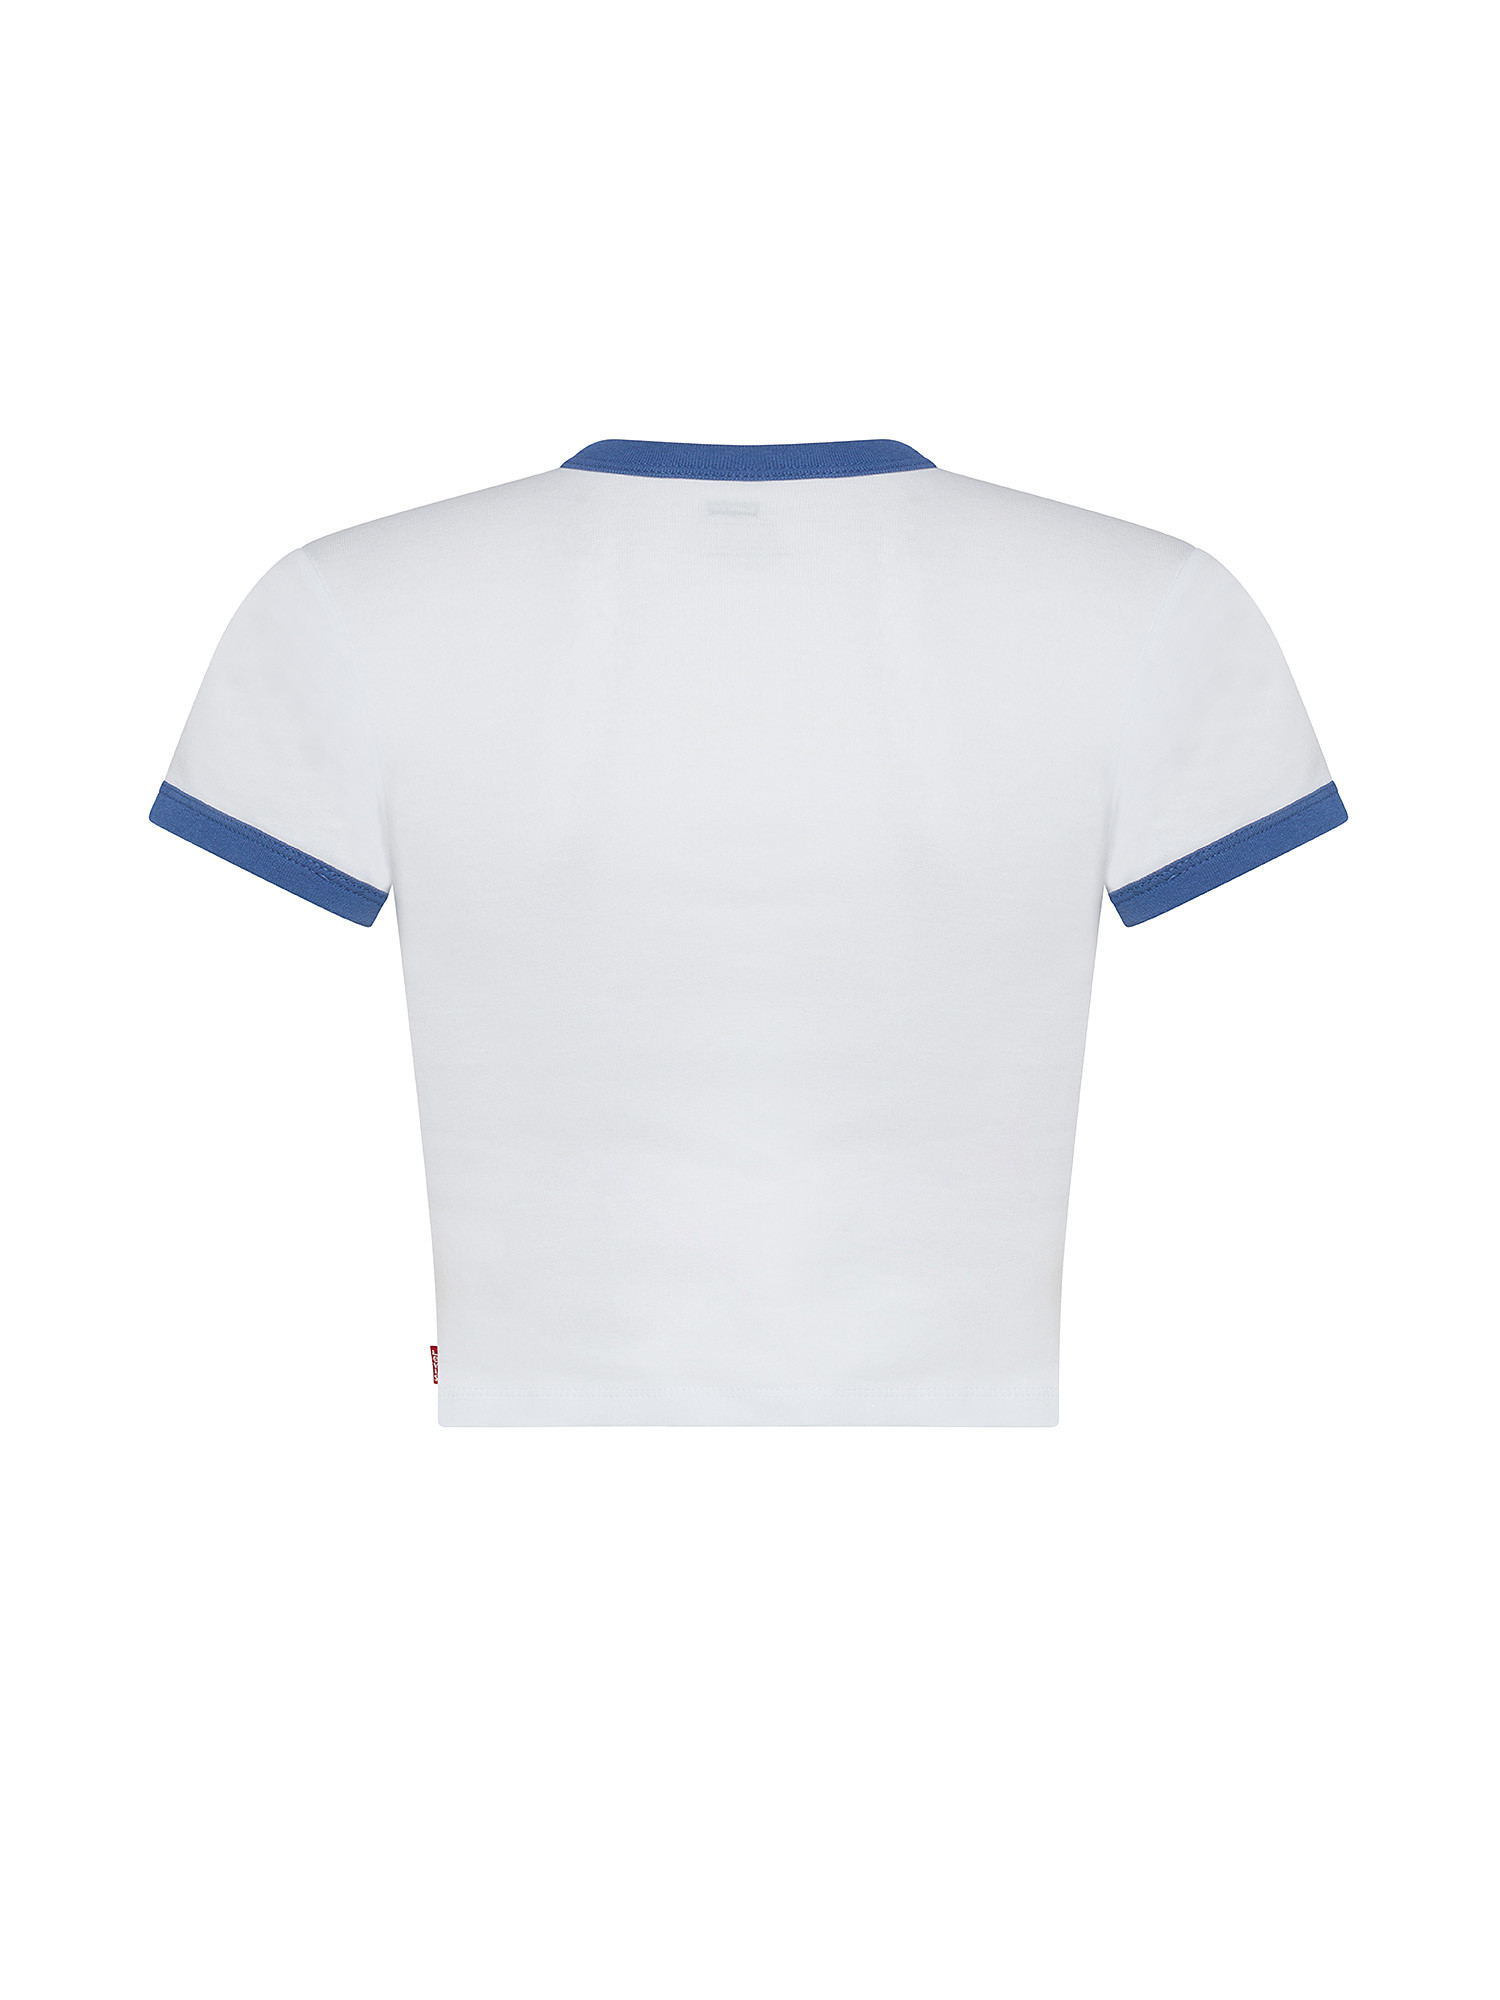 Levi's - ringer mini printed t-shirt, Blue, large image number 1